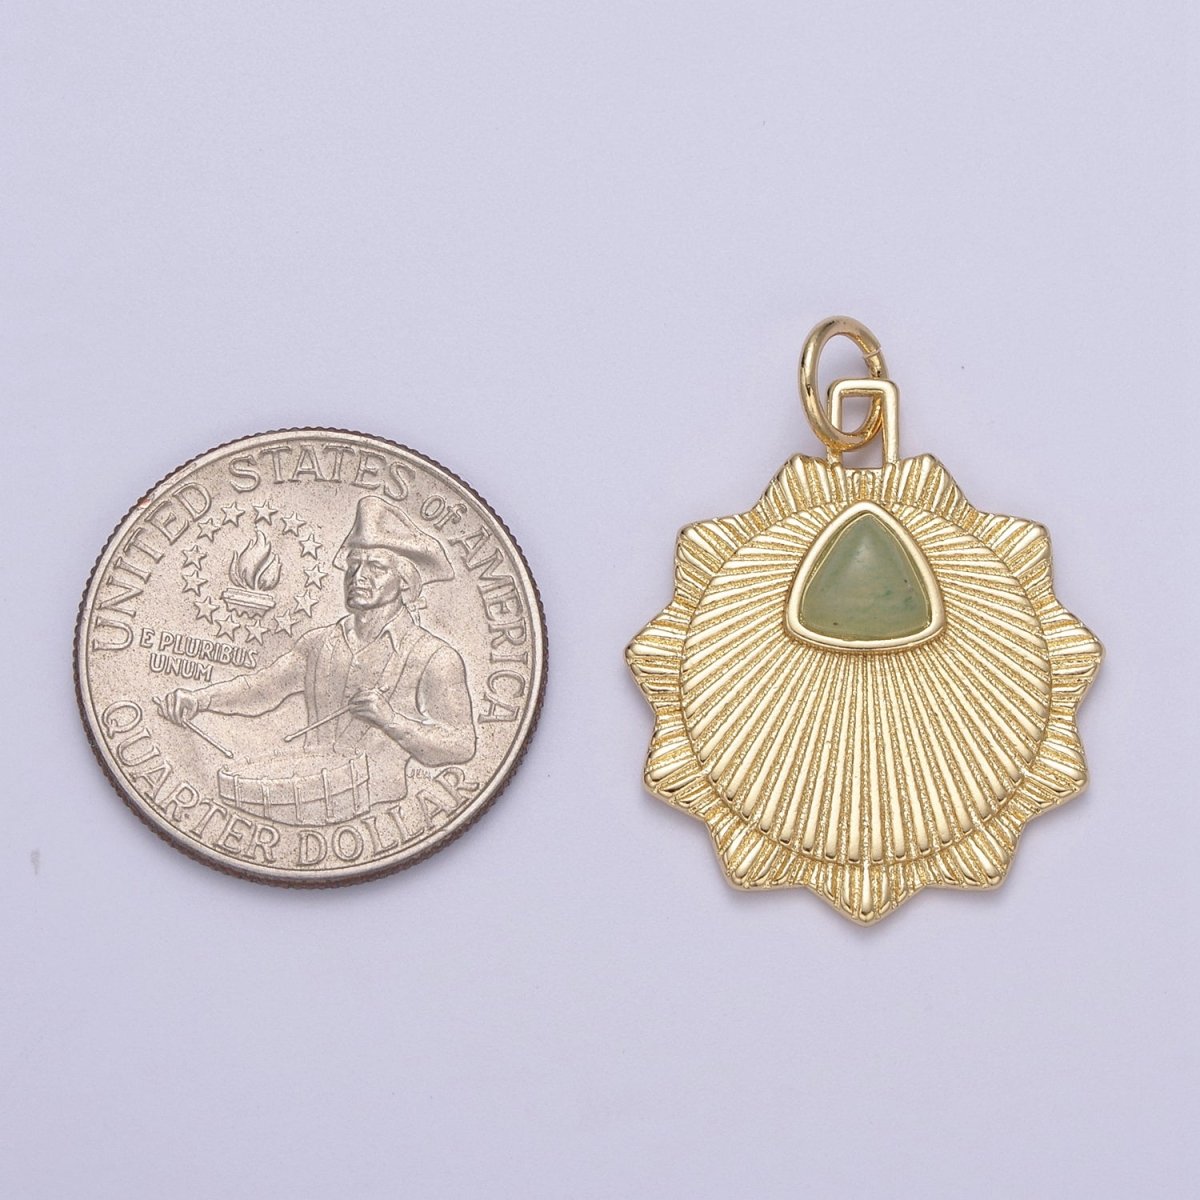 Green Aventurine Round Coin Radial Textured Token Medallion Charm for Minimalist Jewelry N-398 - DLUXCA